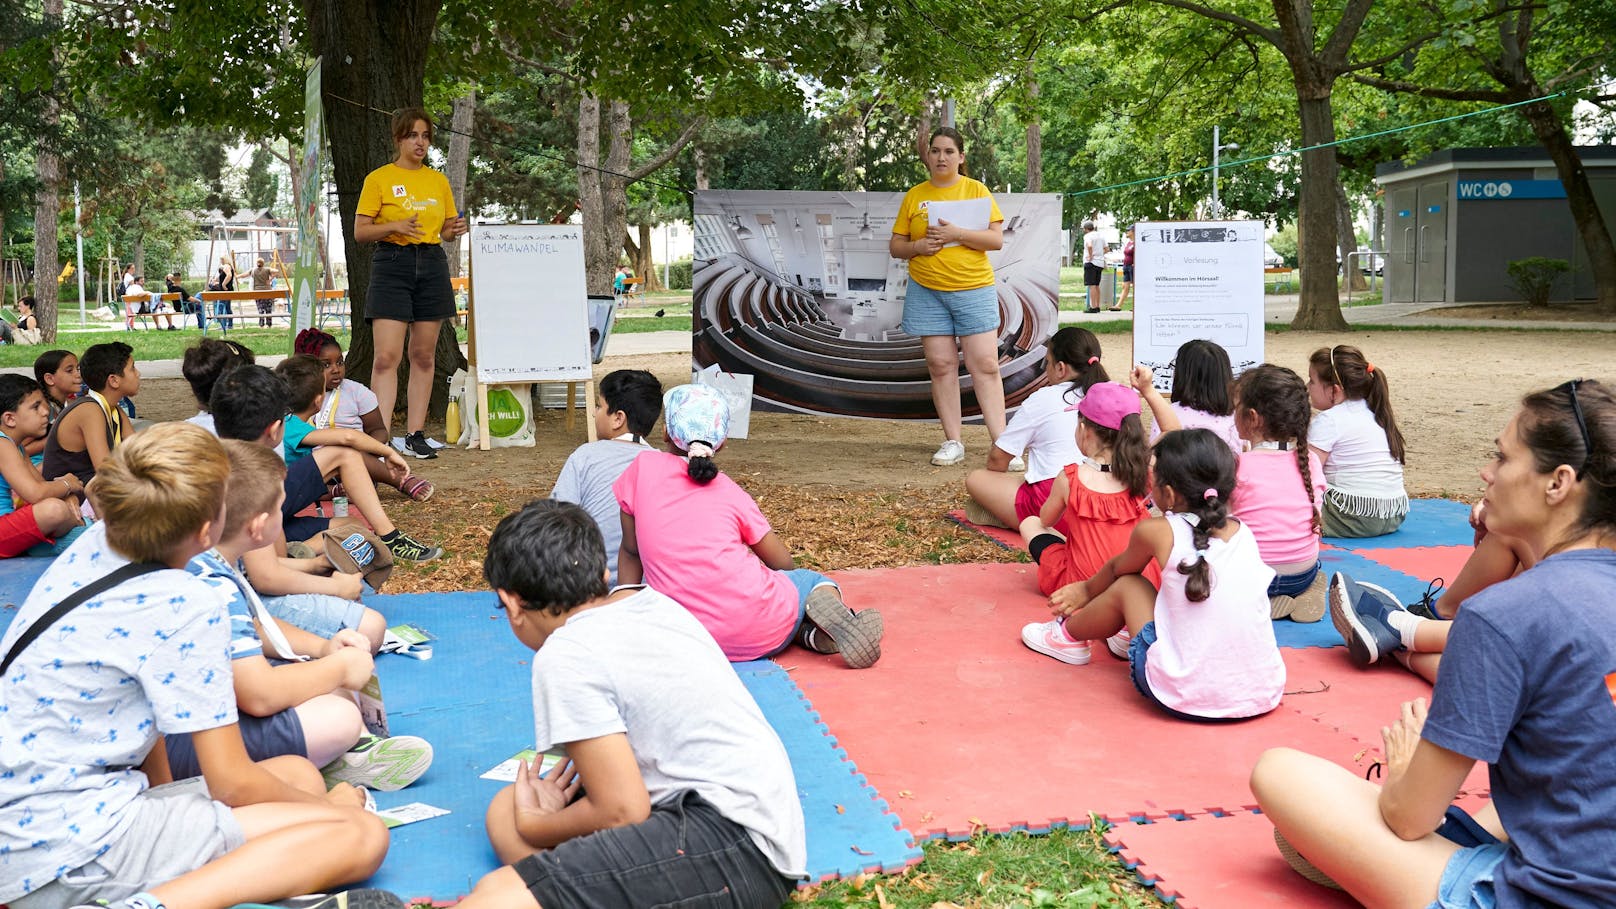 Vorlesung im Park: Kinder bekommen frische Luft und Bildung in den Mini-Vorlesungen der "Kinderuni on Tour"